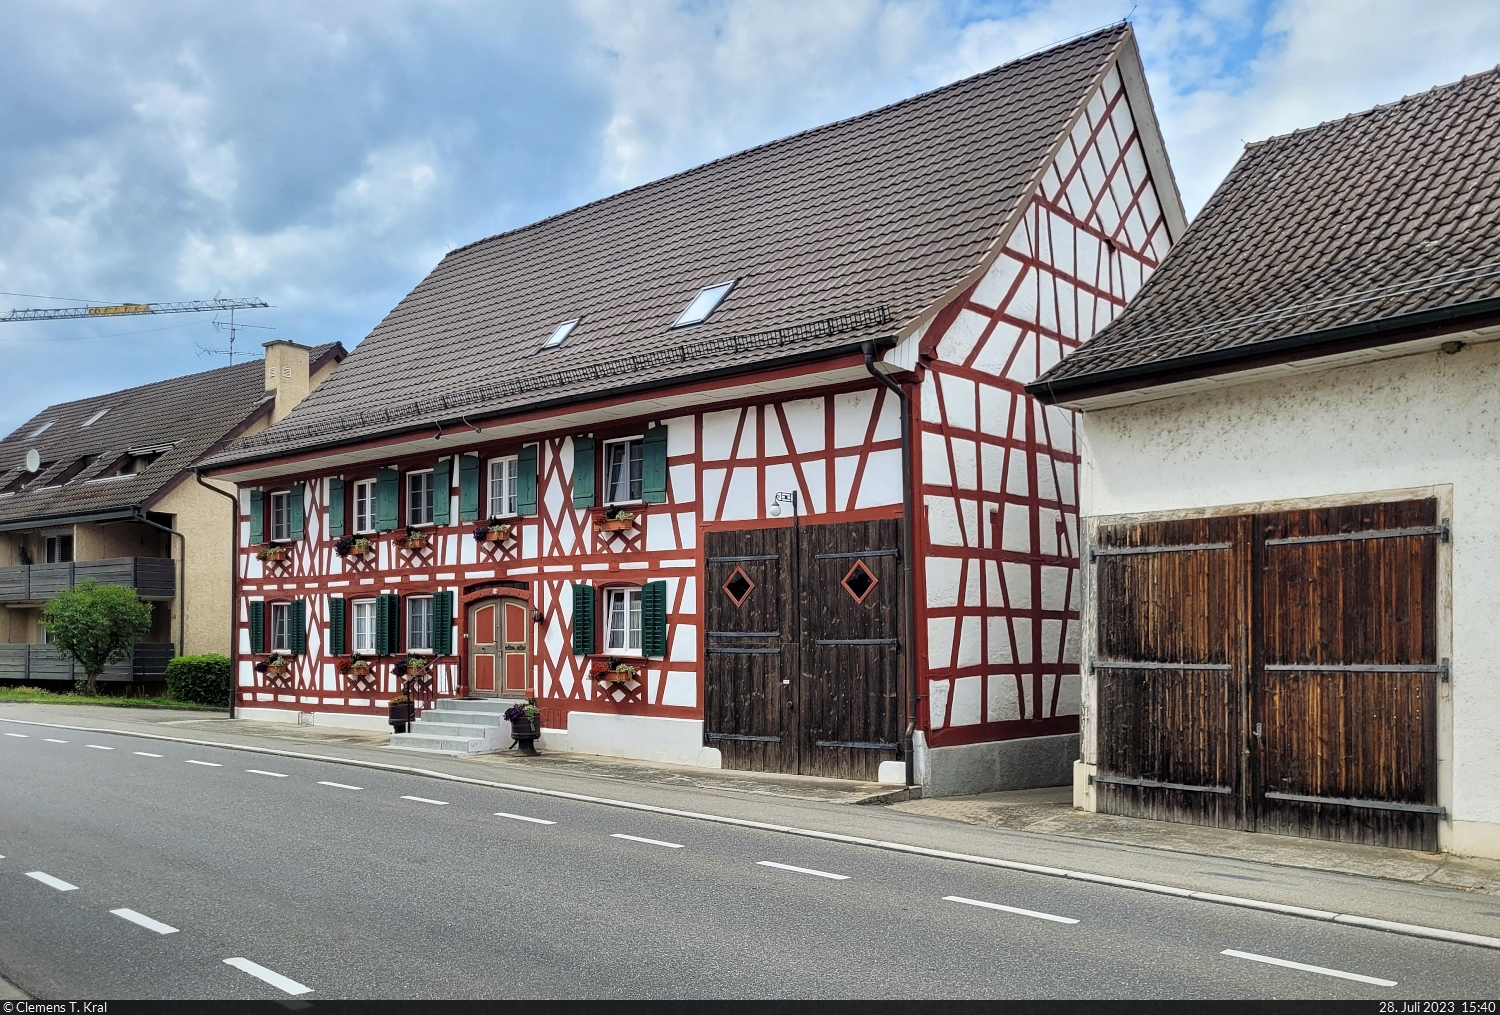 Liebevoll erhaltenes Fachwerkhaus gegenber der Dorfkirche in Bsingen am Hochrhein, einer deutschen Exklave in der Schweiz.

🕓 28.7.2023 | 15:40 Uhr